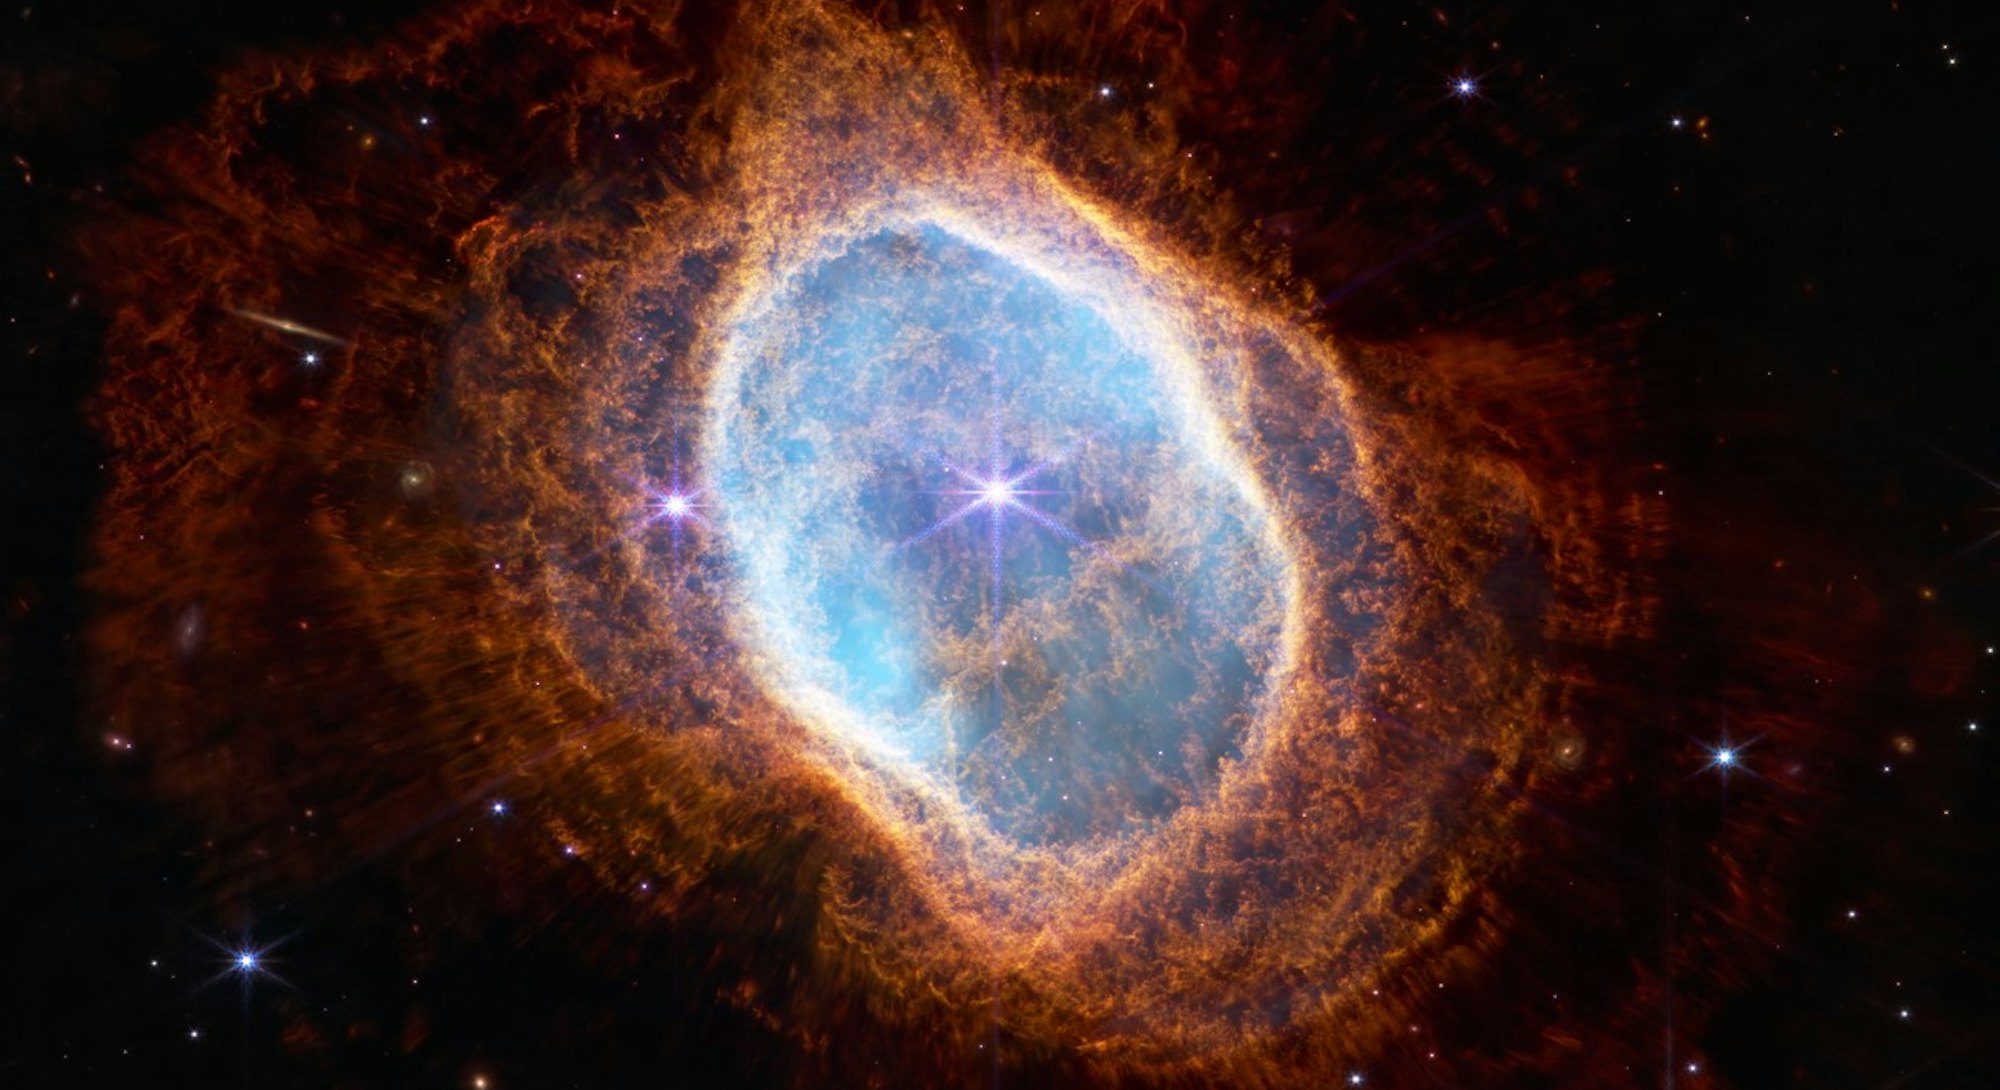 Southern Ring Nebula captured by JWST